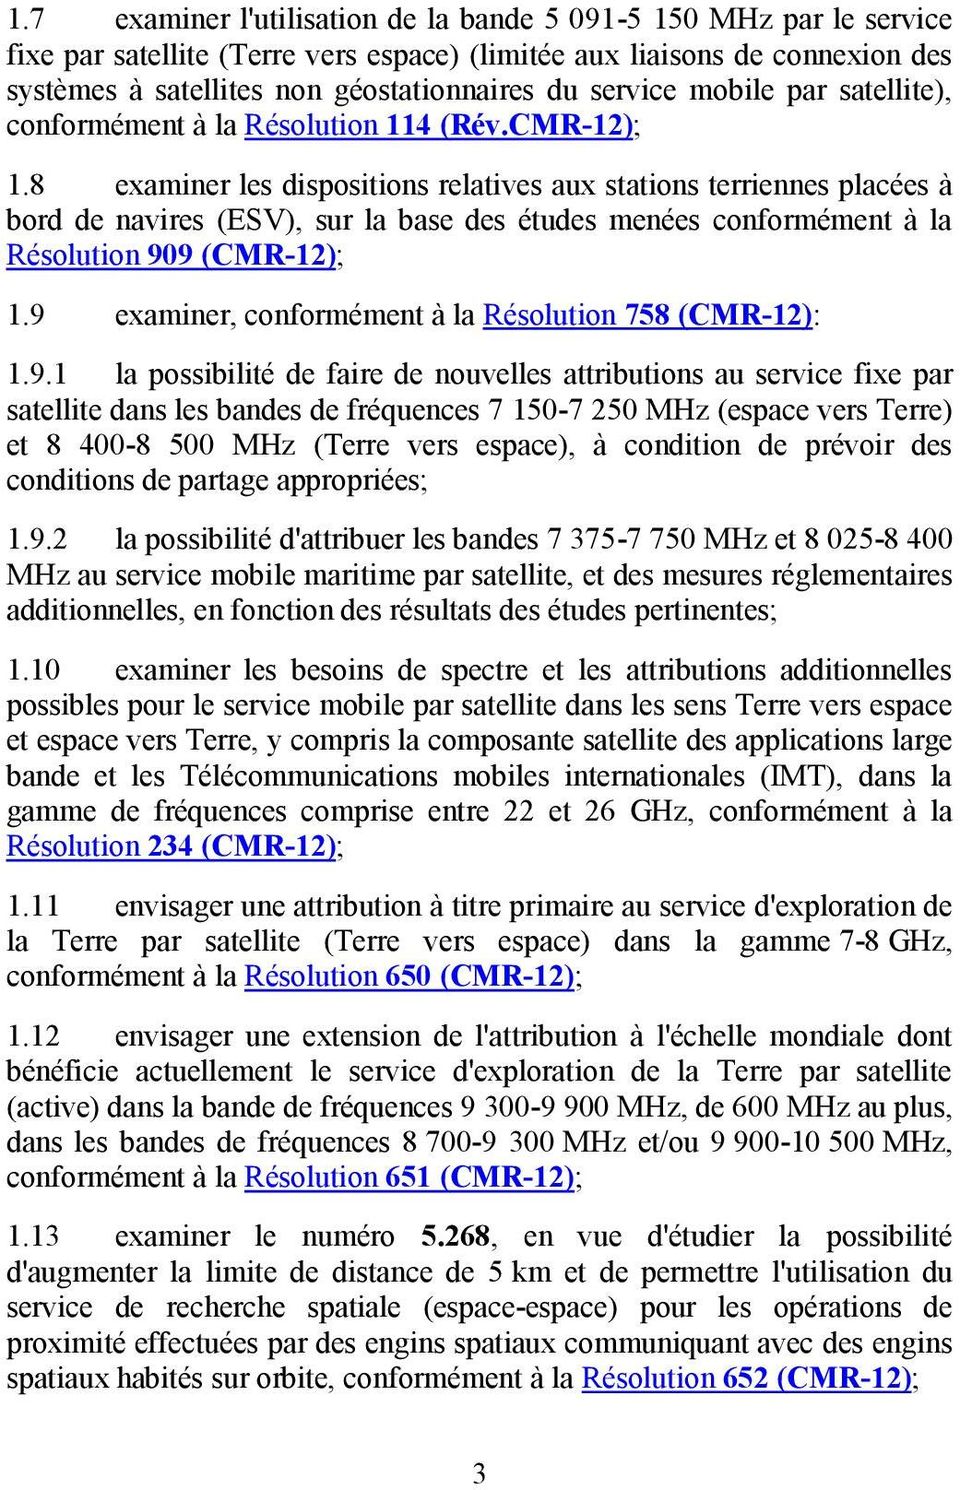 8 examiner les dispositions relatives aux stations terriennes placées à bord de navires (ESV), sur la base des études menées conformément à la Résolution 909 (CMR-12); 1.